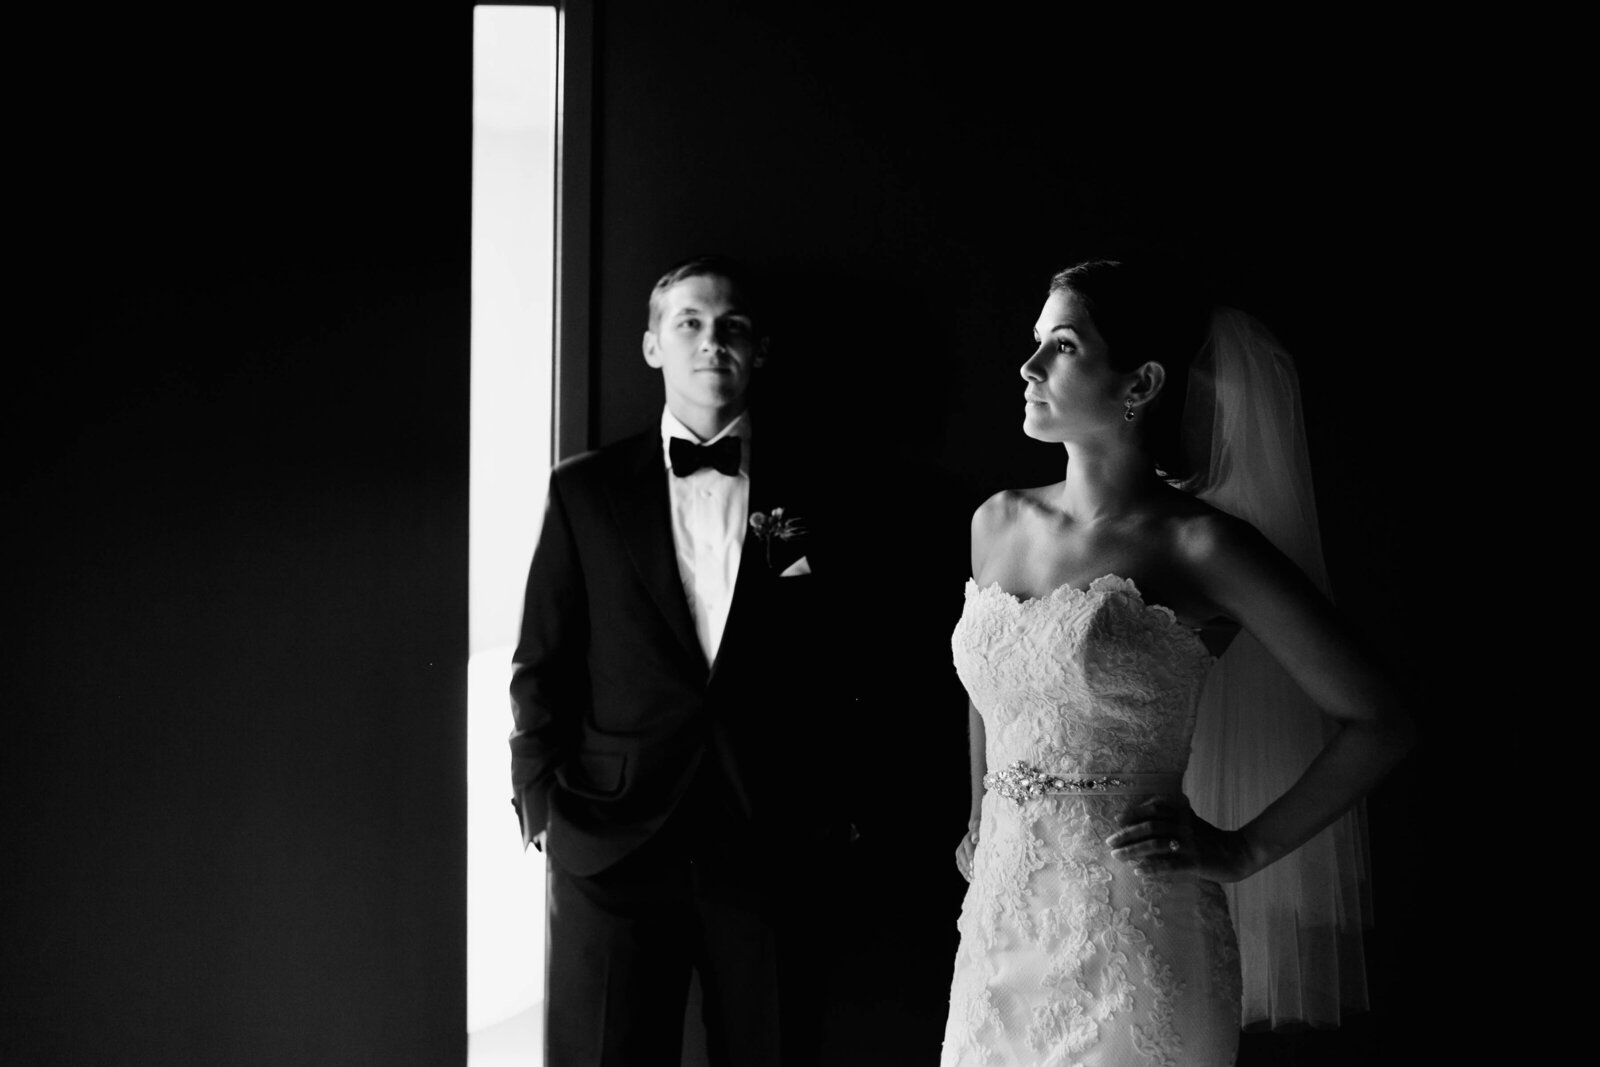 bride and groom in window light